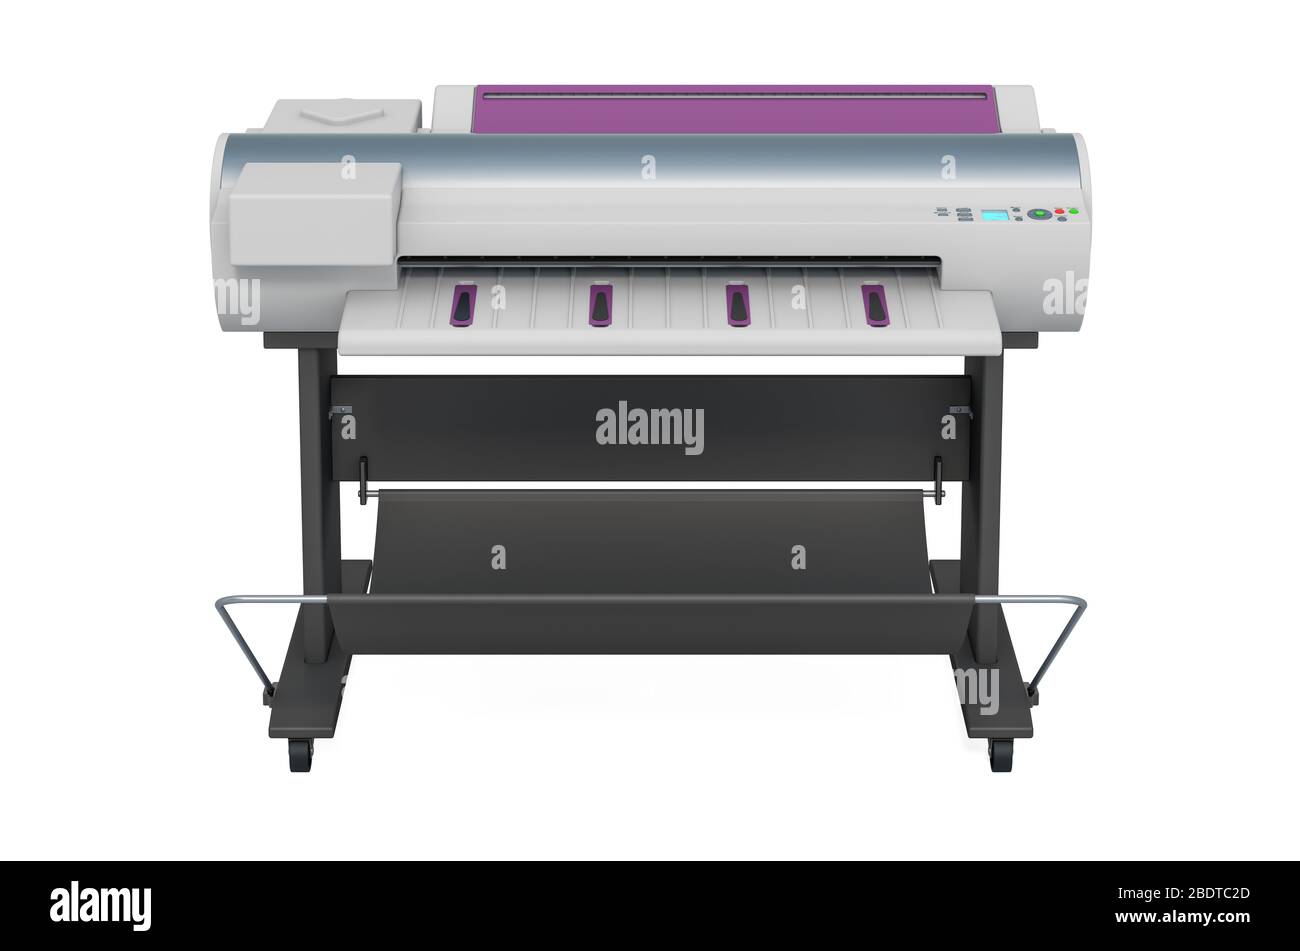 Plotter, large format inkjet printer. 3D rendering isolated on white background Stock Photo